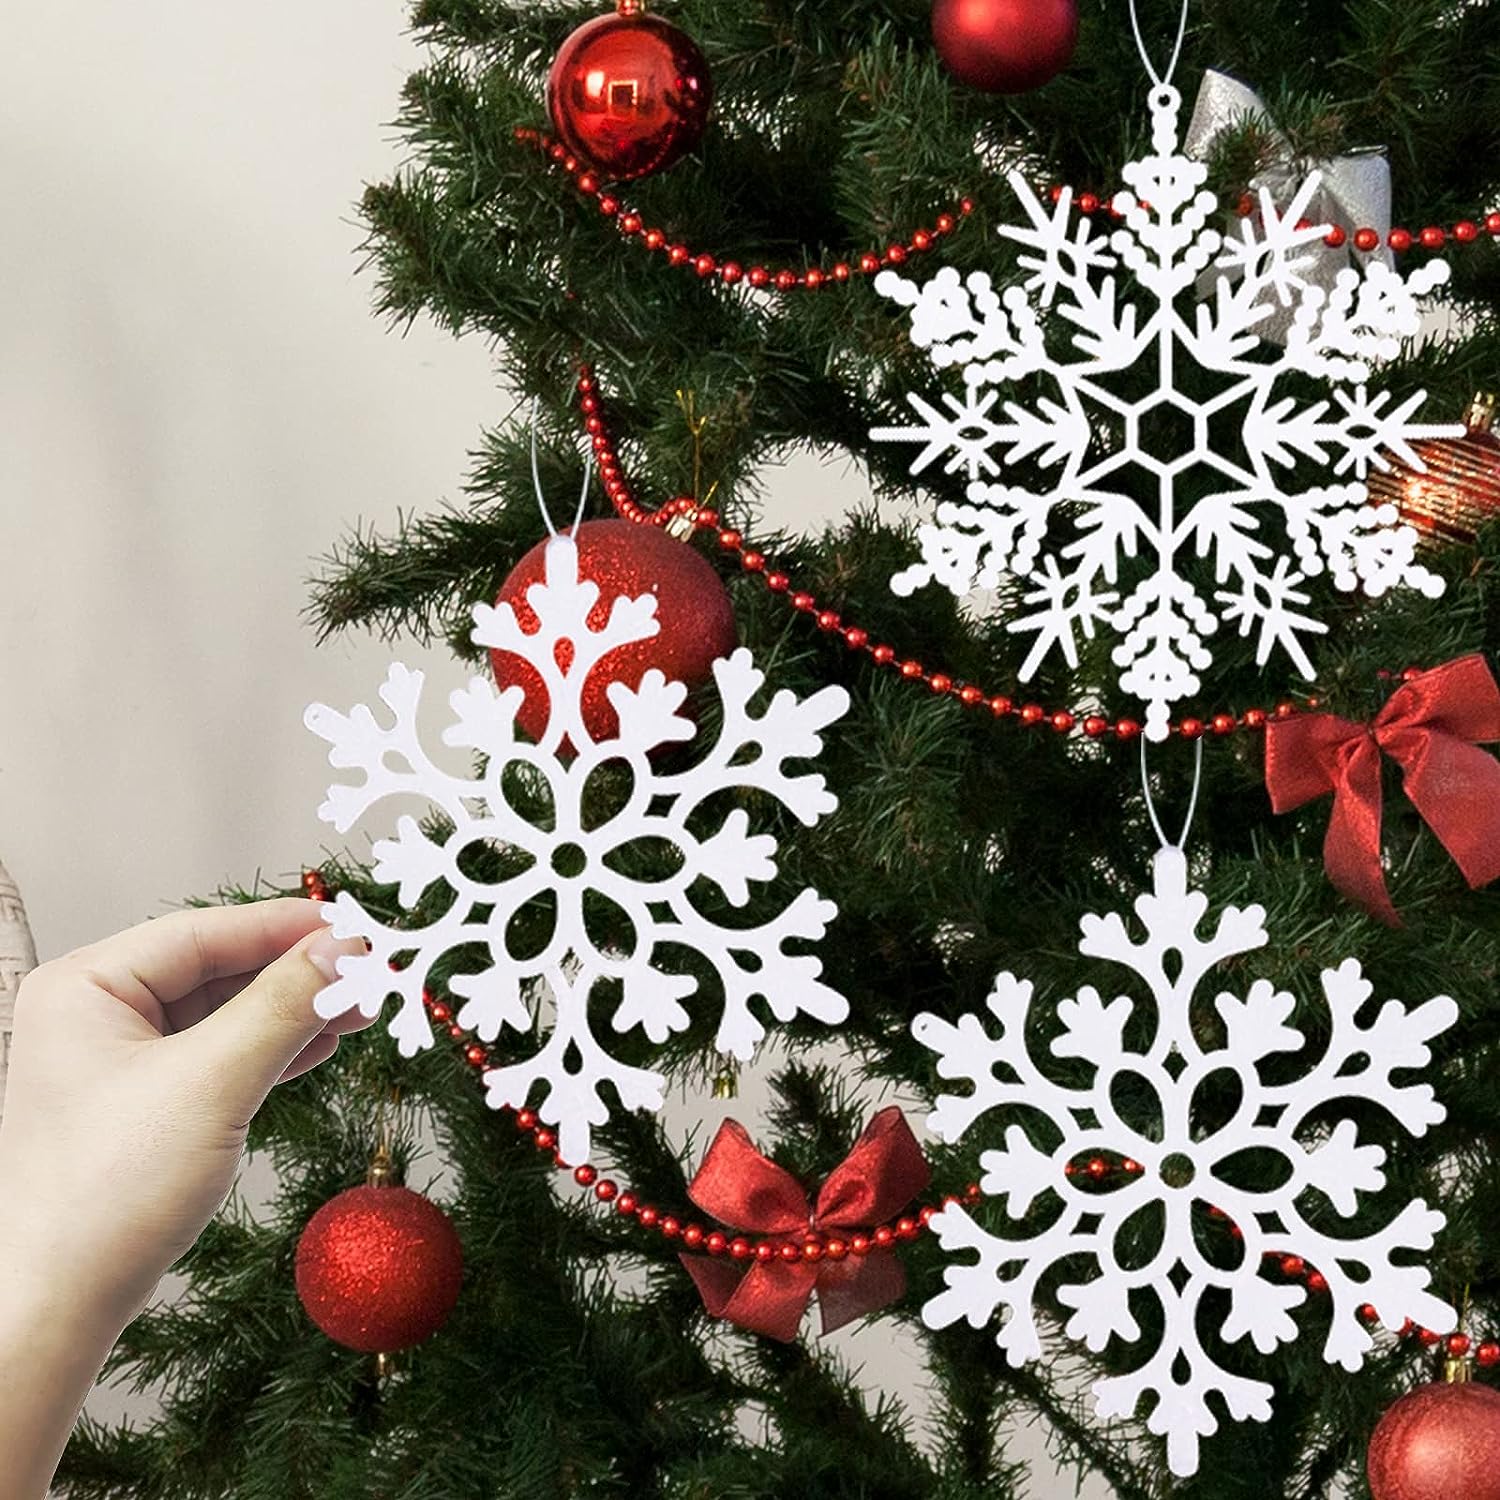 Confezione da 36 ornamenti di fiocchi di neve bianchi in plastica  Decorazioni invernali di Natale, decorazioni per fiocchi di neve appese per  l'albero di Natale invernale del paese delle meraviglie